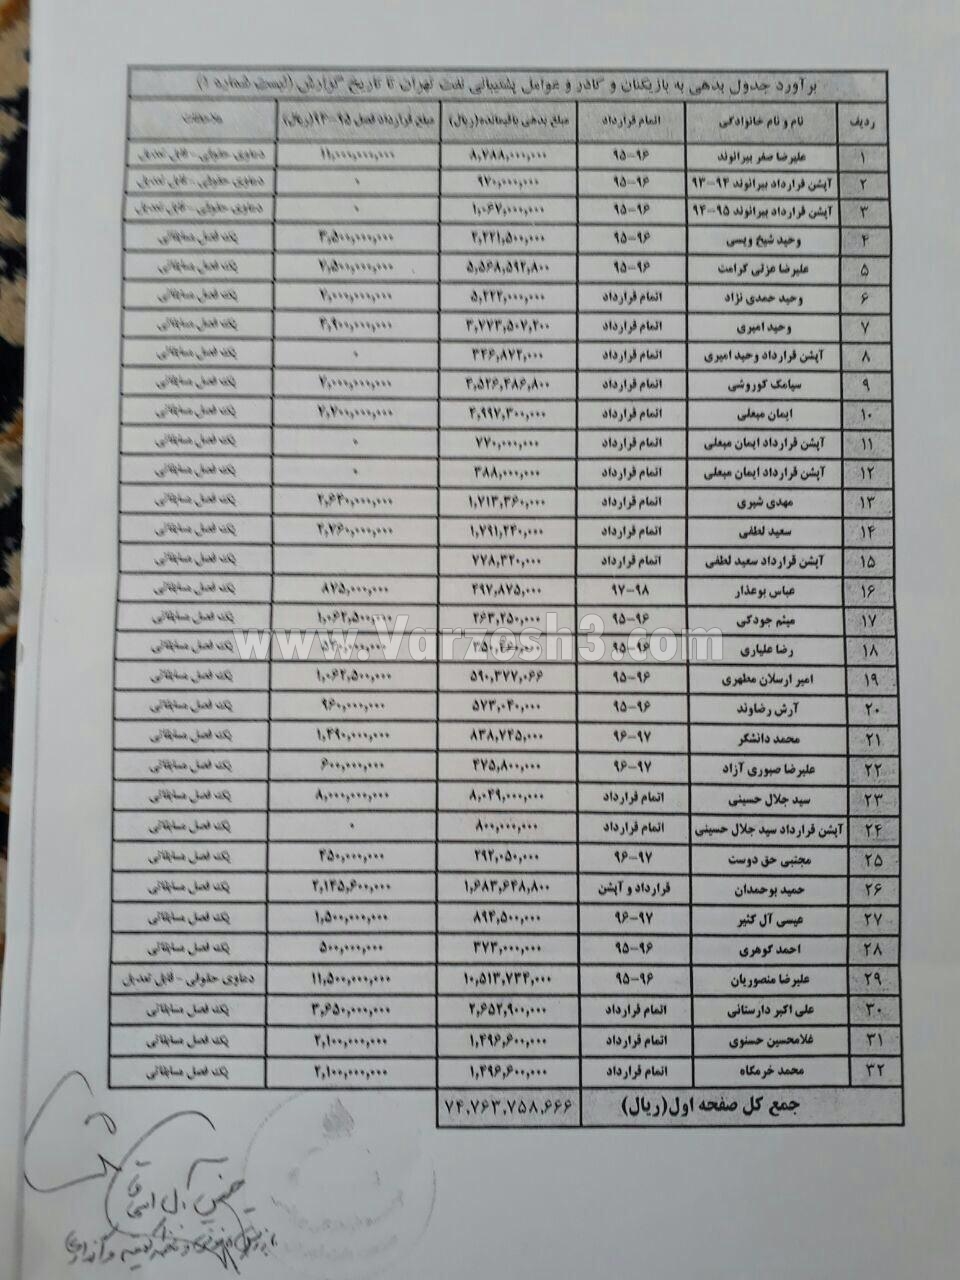 لیست طلبکاران باشگاه نفت منتشر شد(عکس)